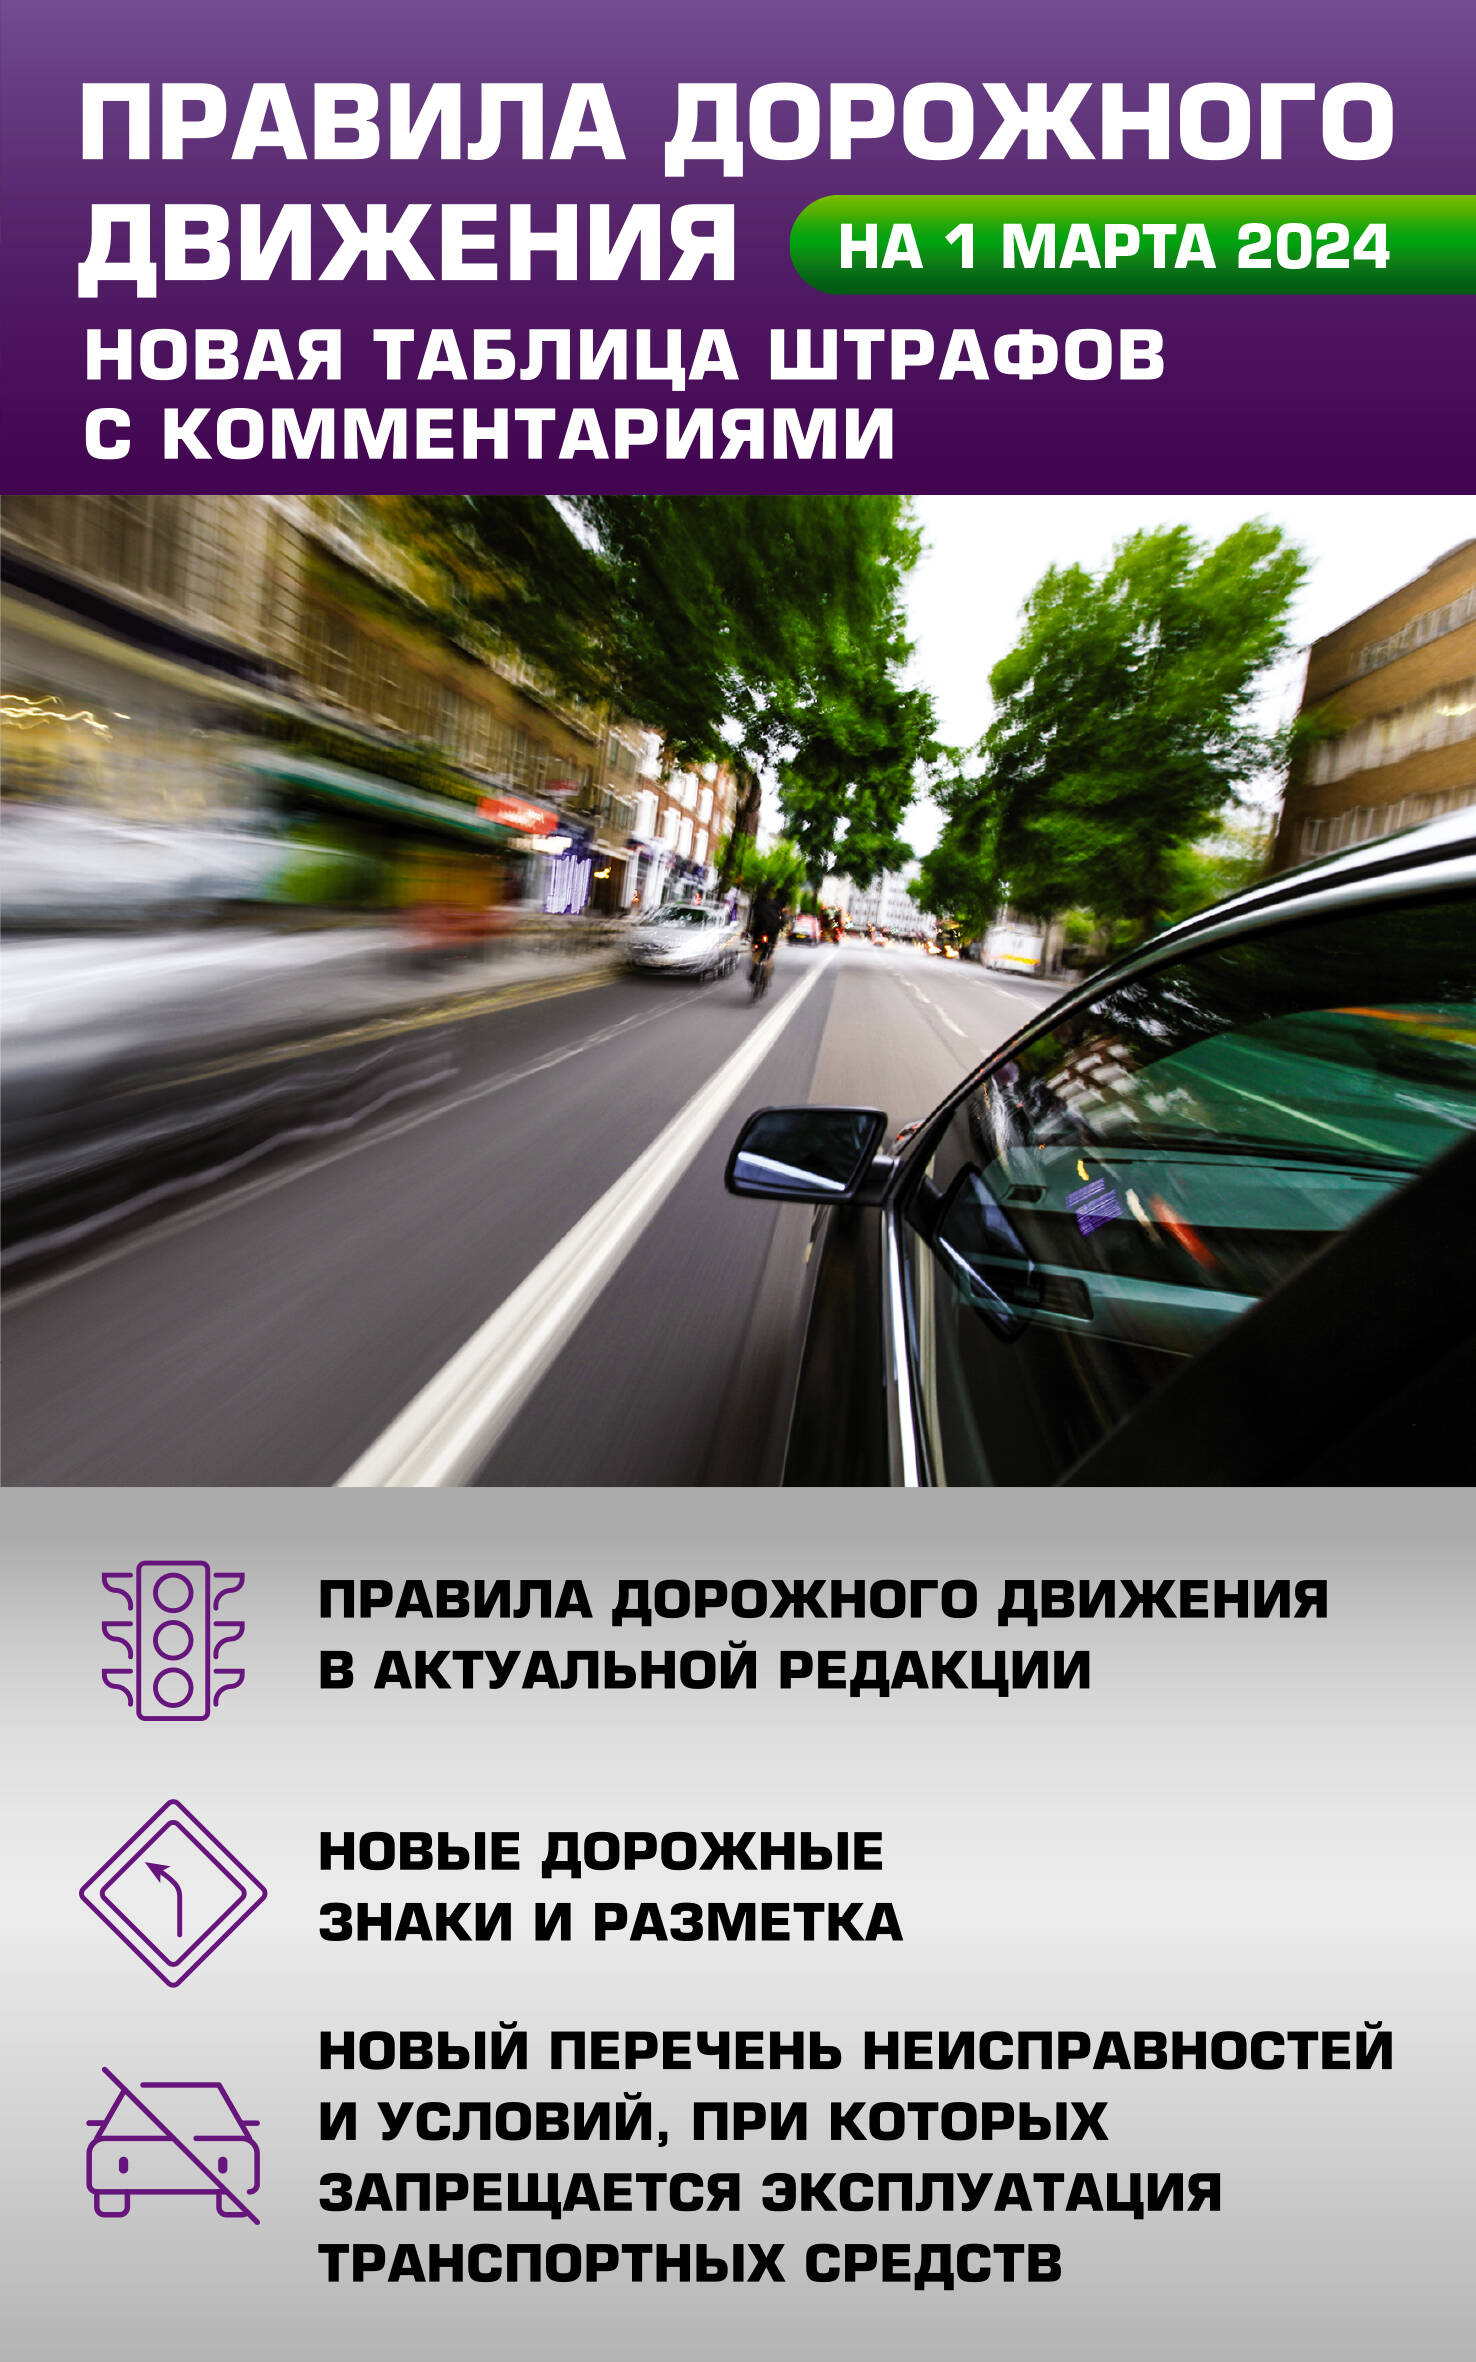 Правила дорожного движения. Новая таблица штрафов с комментариями на 1 марта 2024 года правила дорожного движения новая таблица штрафов с комментариями на 2021 год